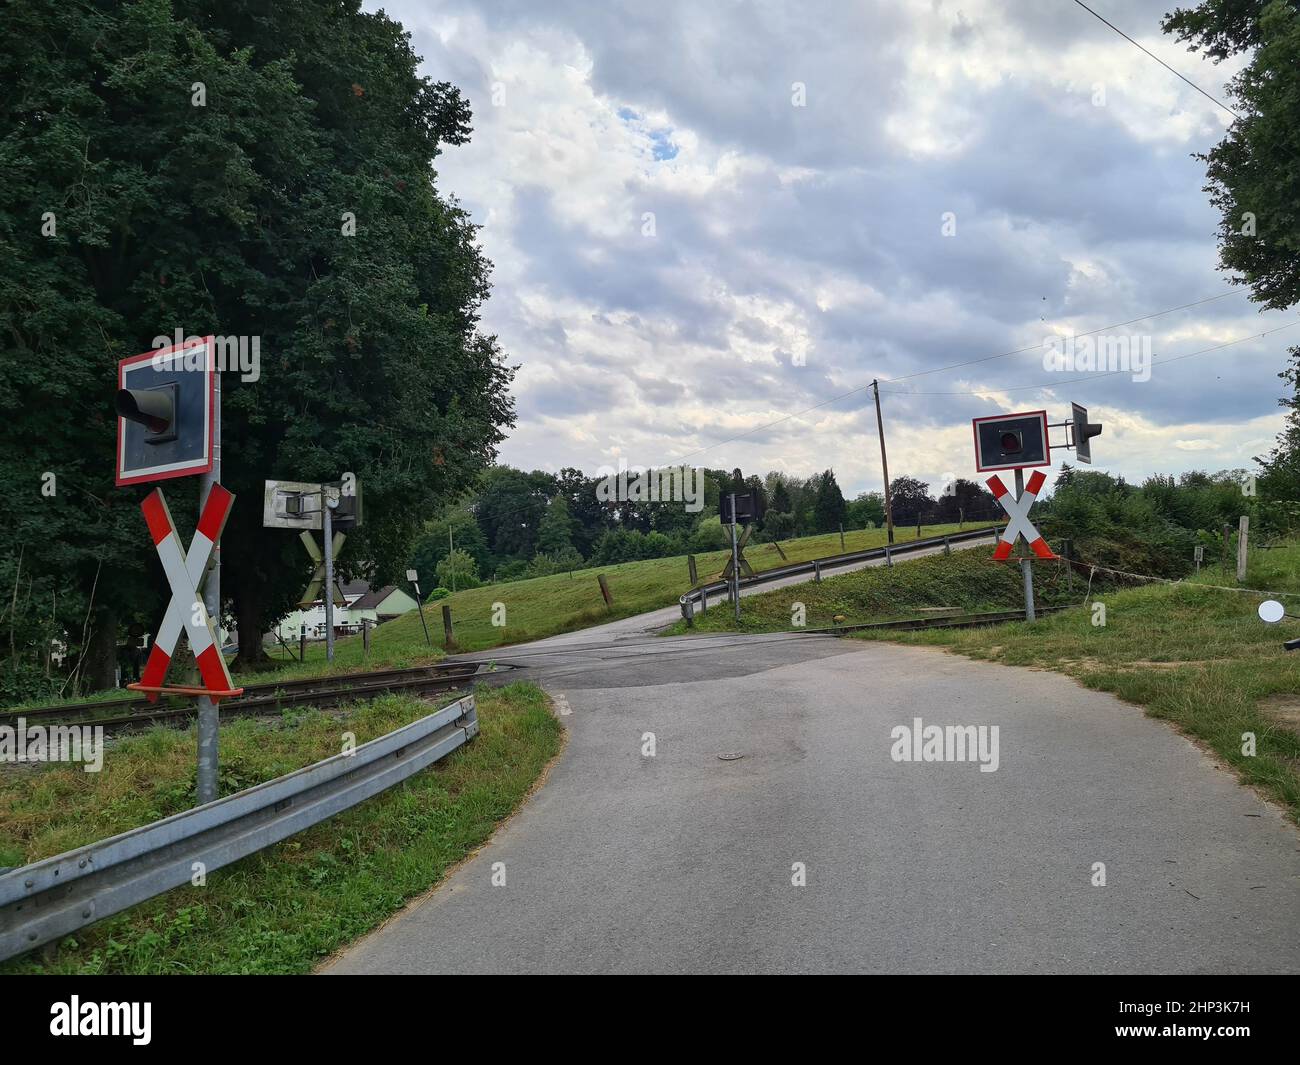 Andreaskreuz mit Ampel vor Straßenbahn - ein lizenzfreies Stock Foto von  Photocase